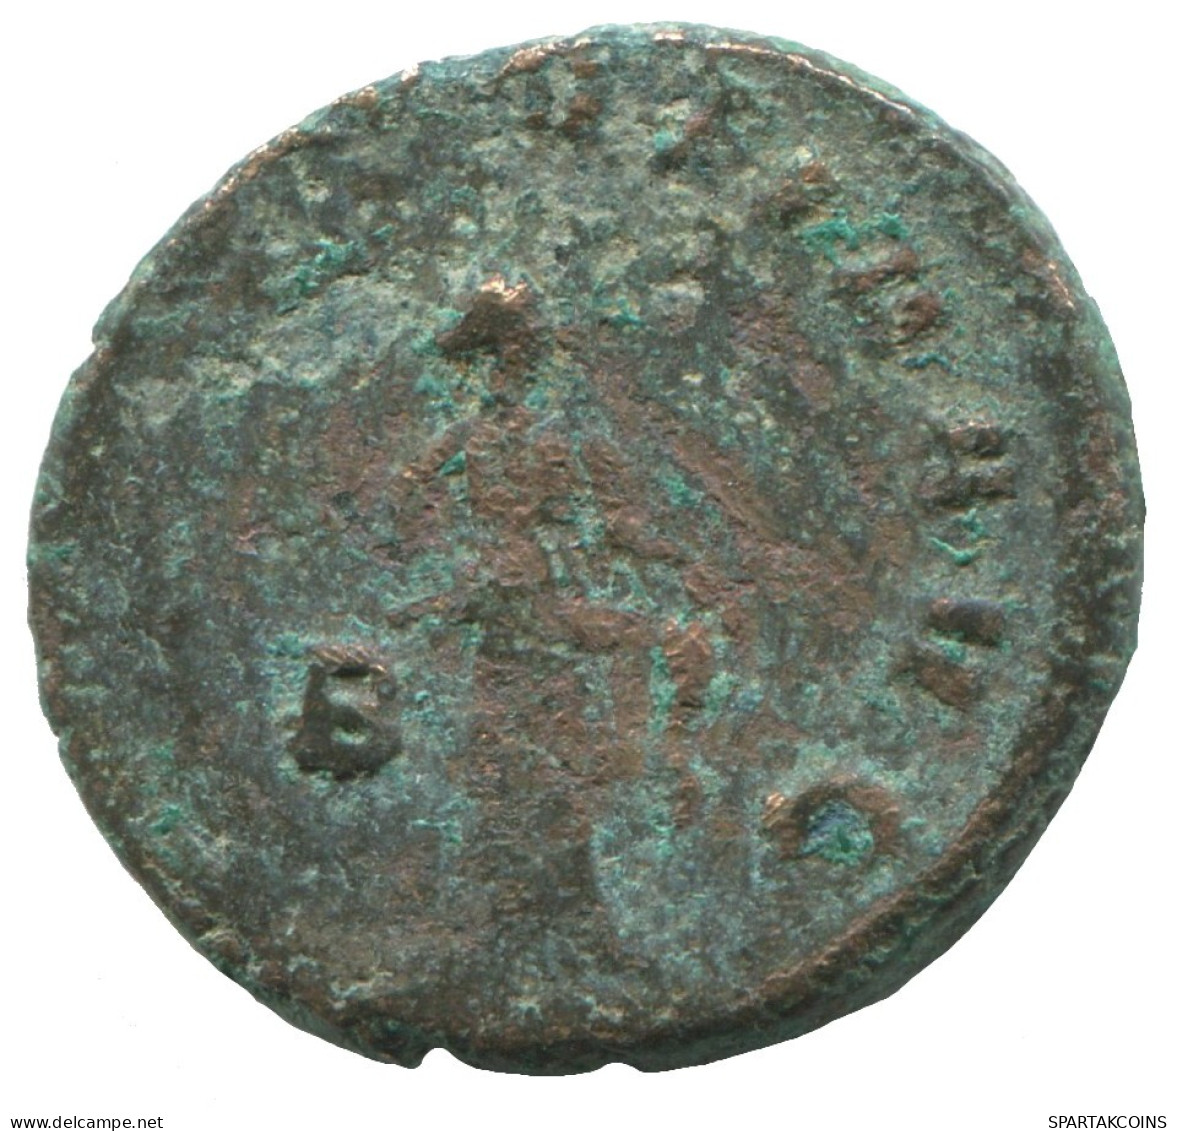 GALLIENUS ROMAN IMPERIO Follis Antiguo Moneda 3.5g/20mm #SAV1094.9.E.A - The Military Crisis (235 AD To 284 AD)